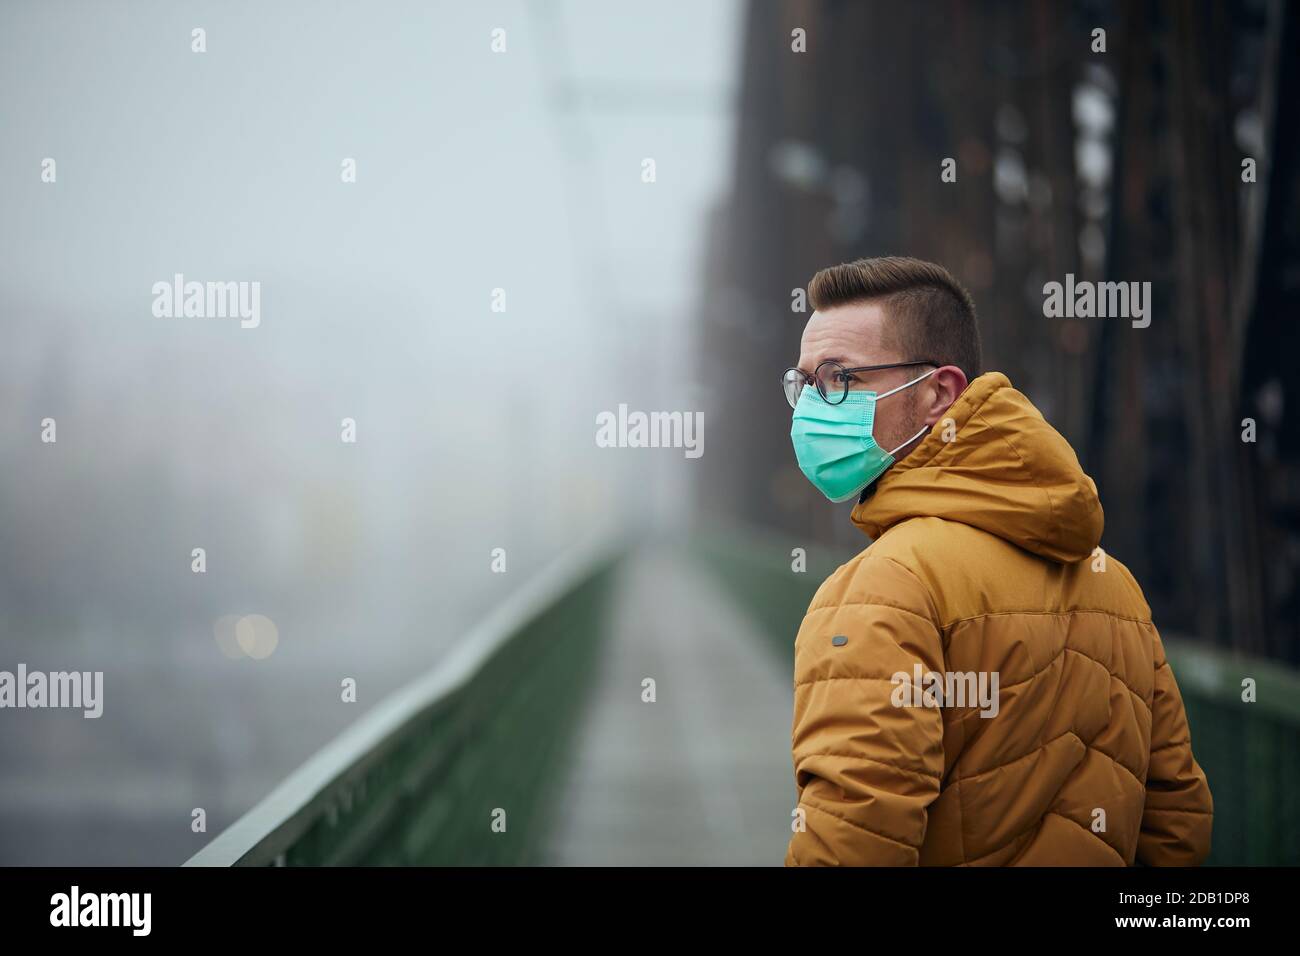 Solitario con maschera facciale che guarda indietro durante la passeggiata sul ponte in nebbia. Temi vita in nuova normale, coronavirus e protezione personale. Foto Stock